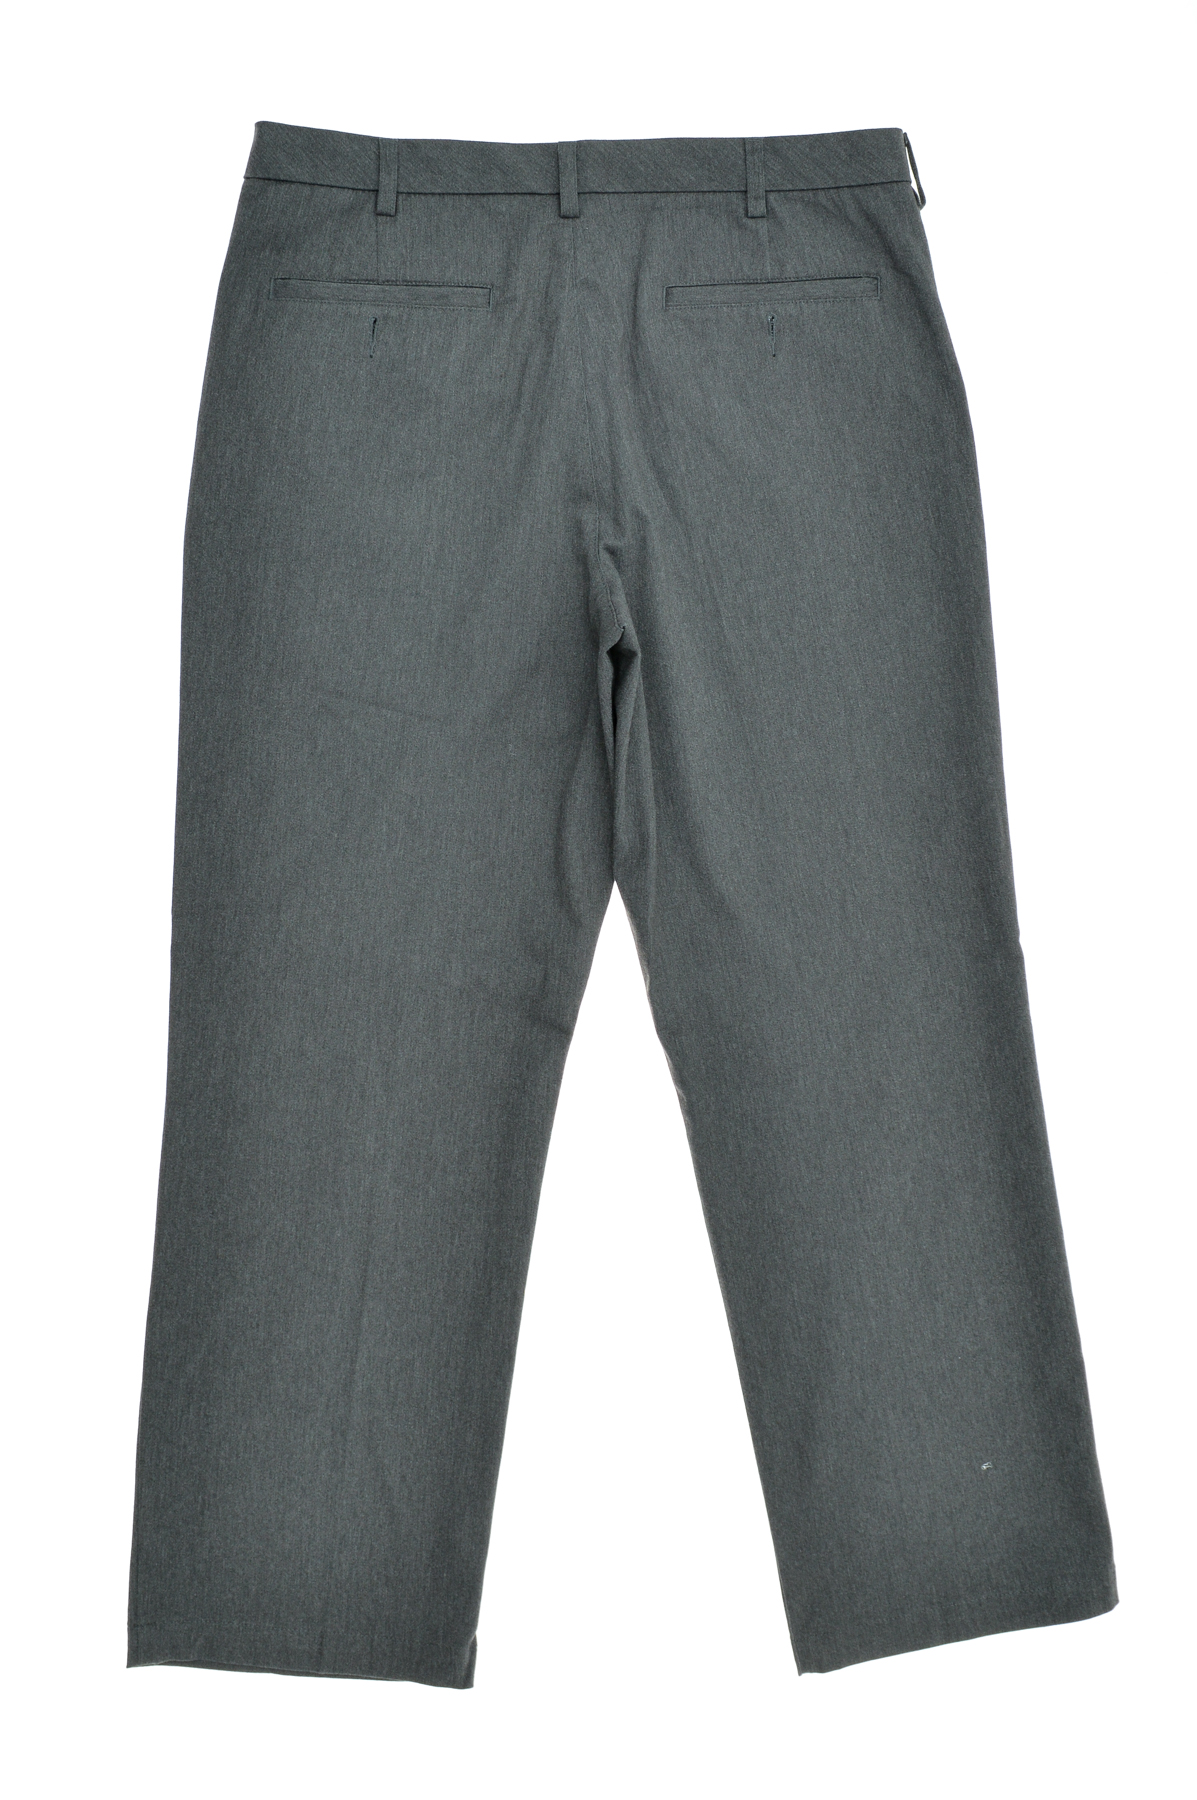 Men's trousers - Croft & Barrow - 1